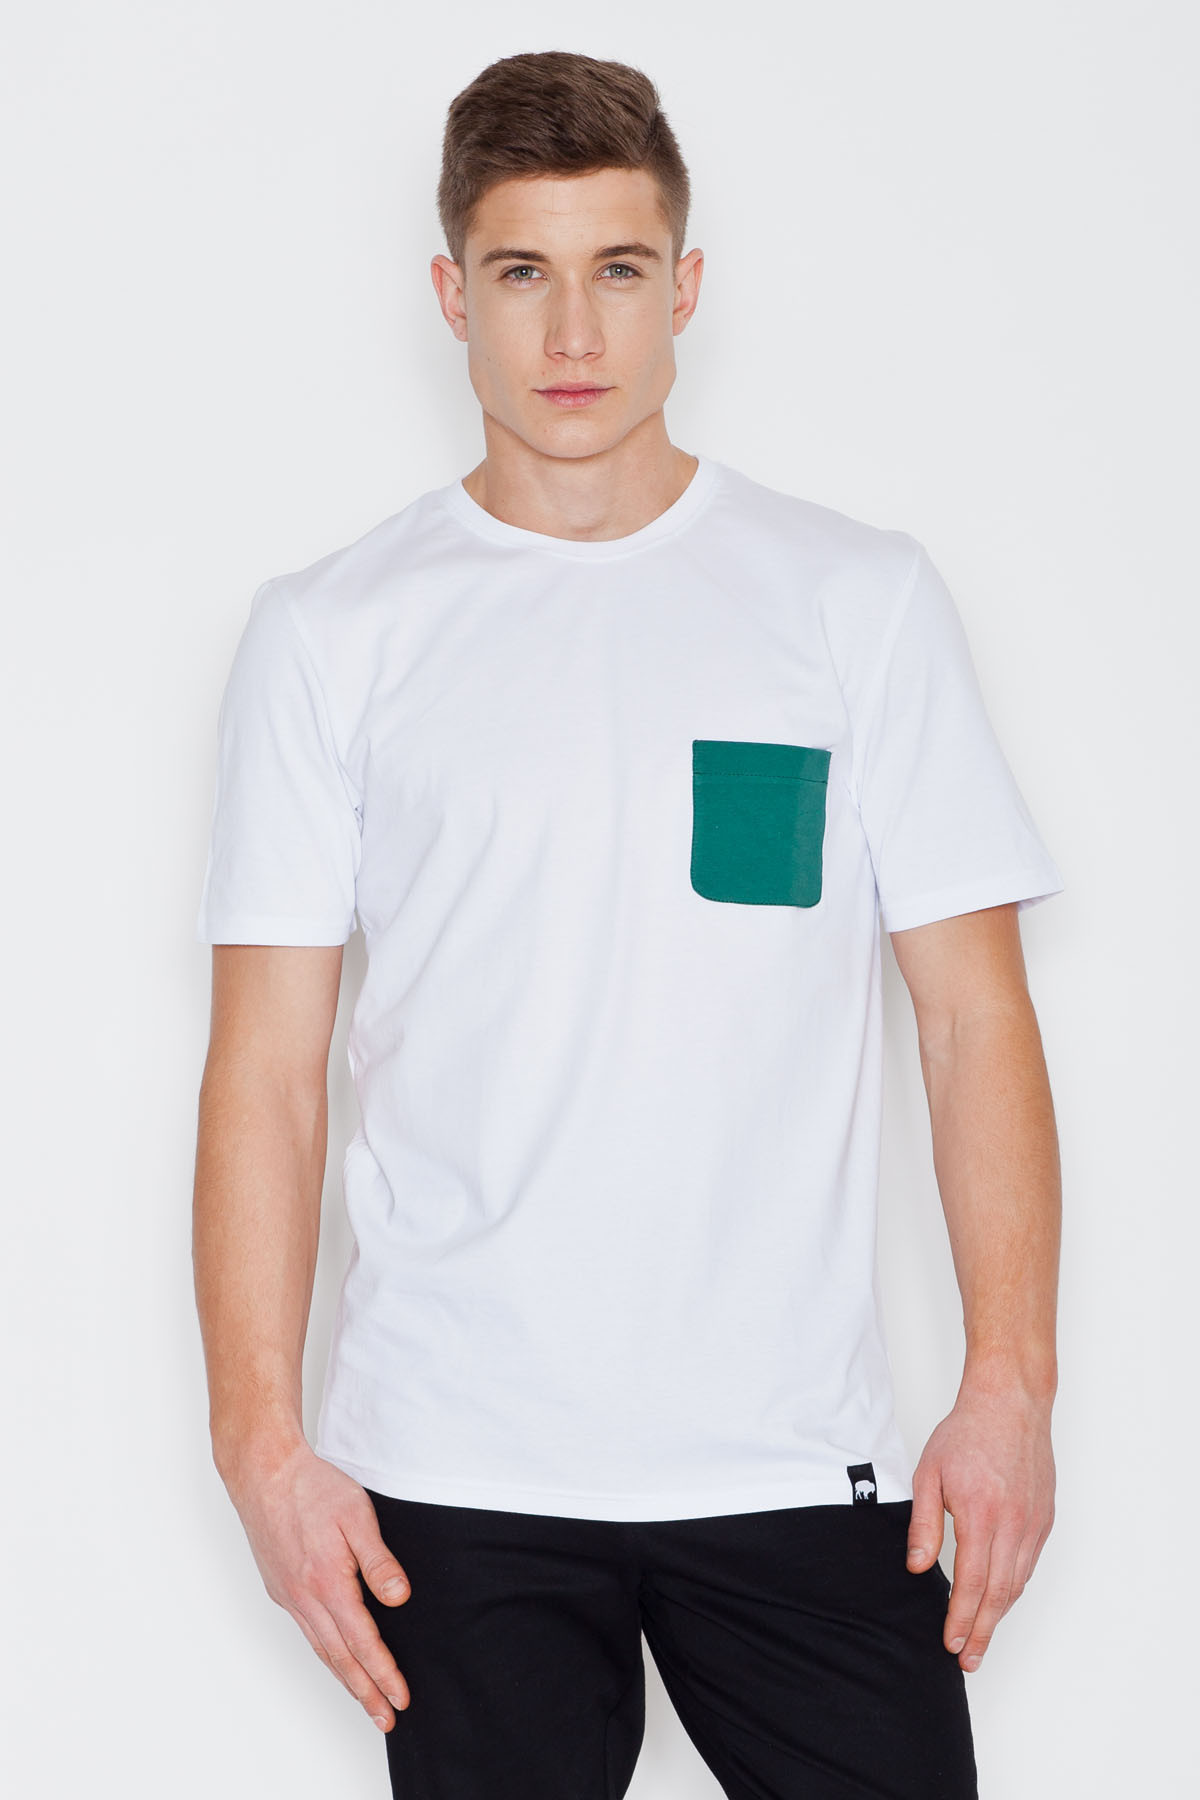 Pánské tričko - V002 - Visent - White S